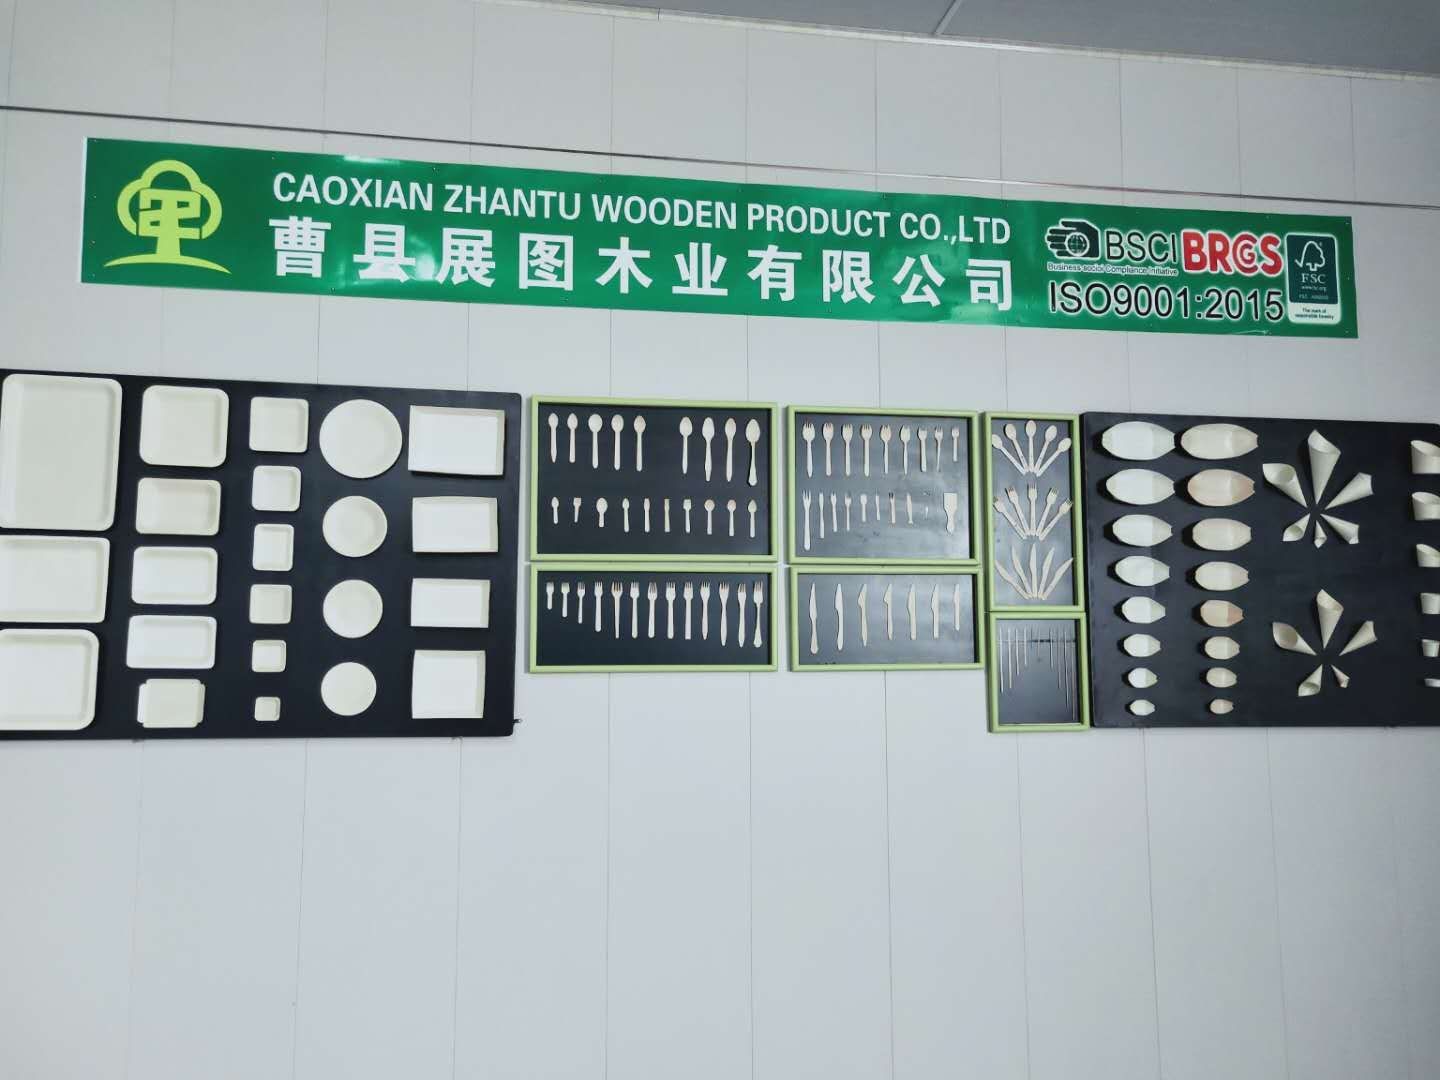 Caoxian zhantu wooden product Co.,Ltd